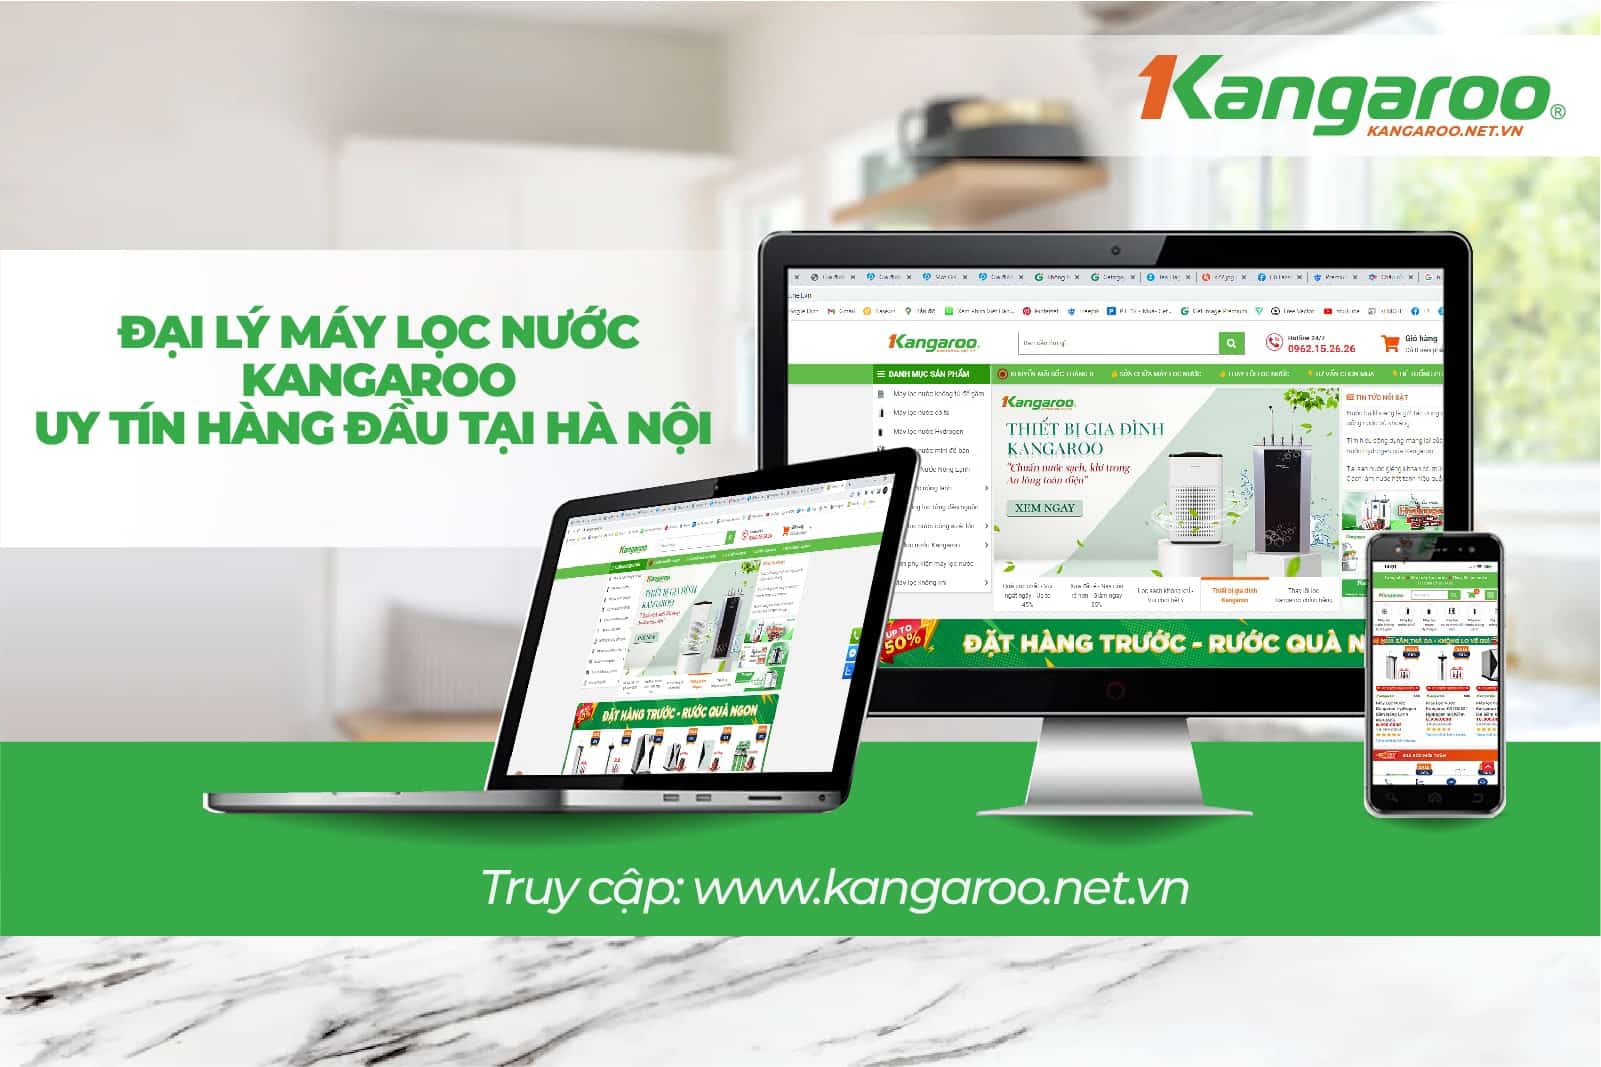 Địa chỉ mua hệ thống lọc đầu nguồn Kangaroo KG888